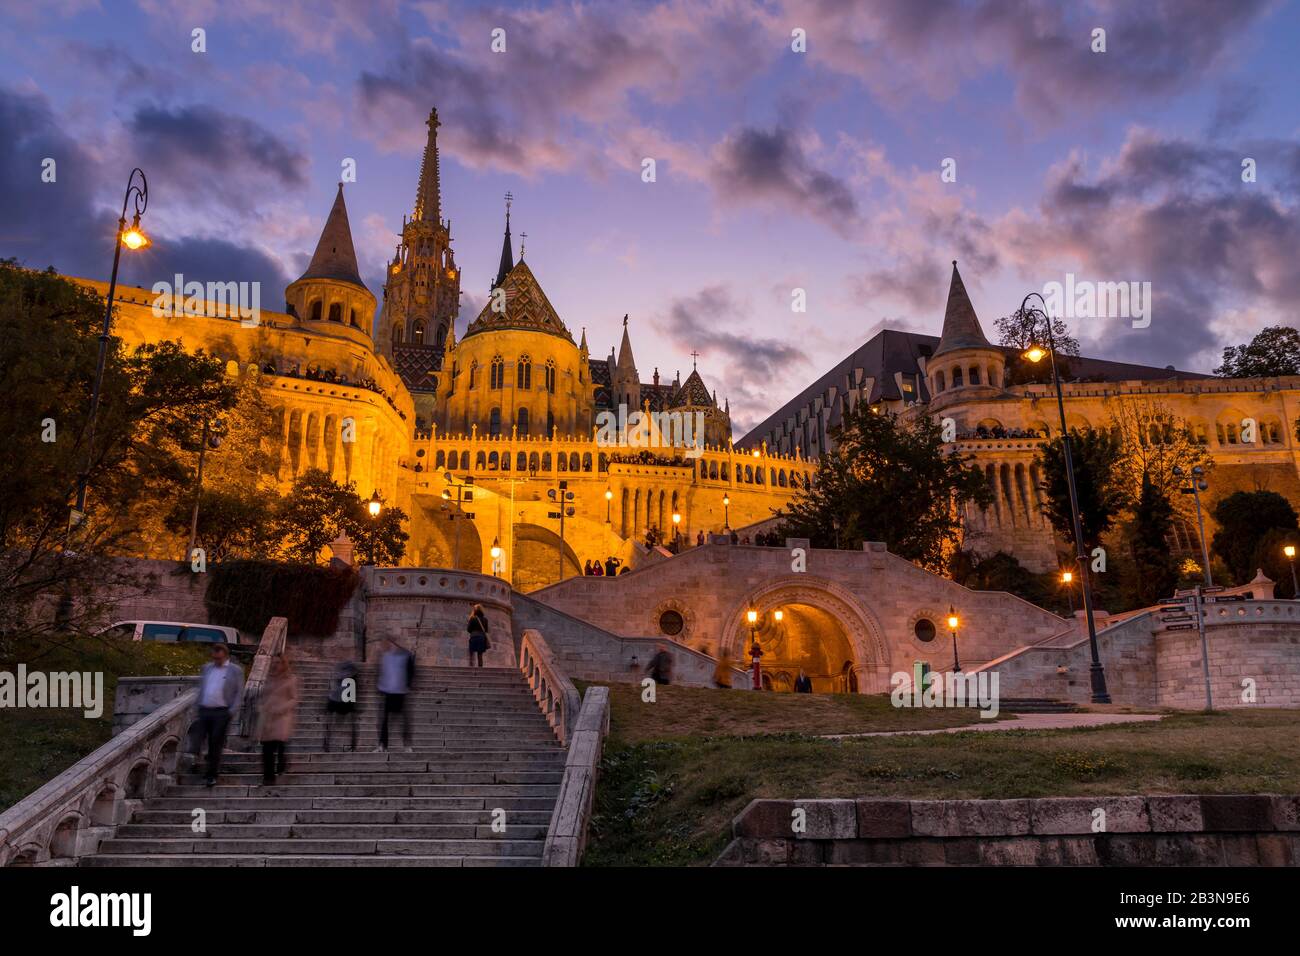 Le bastion éclairé des pêcheurs au crépuscule, site classé au patrimoine mondial de l'UNESCO, Budapest, Hongrie, Europe Banque D'Images